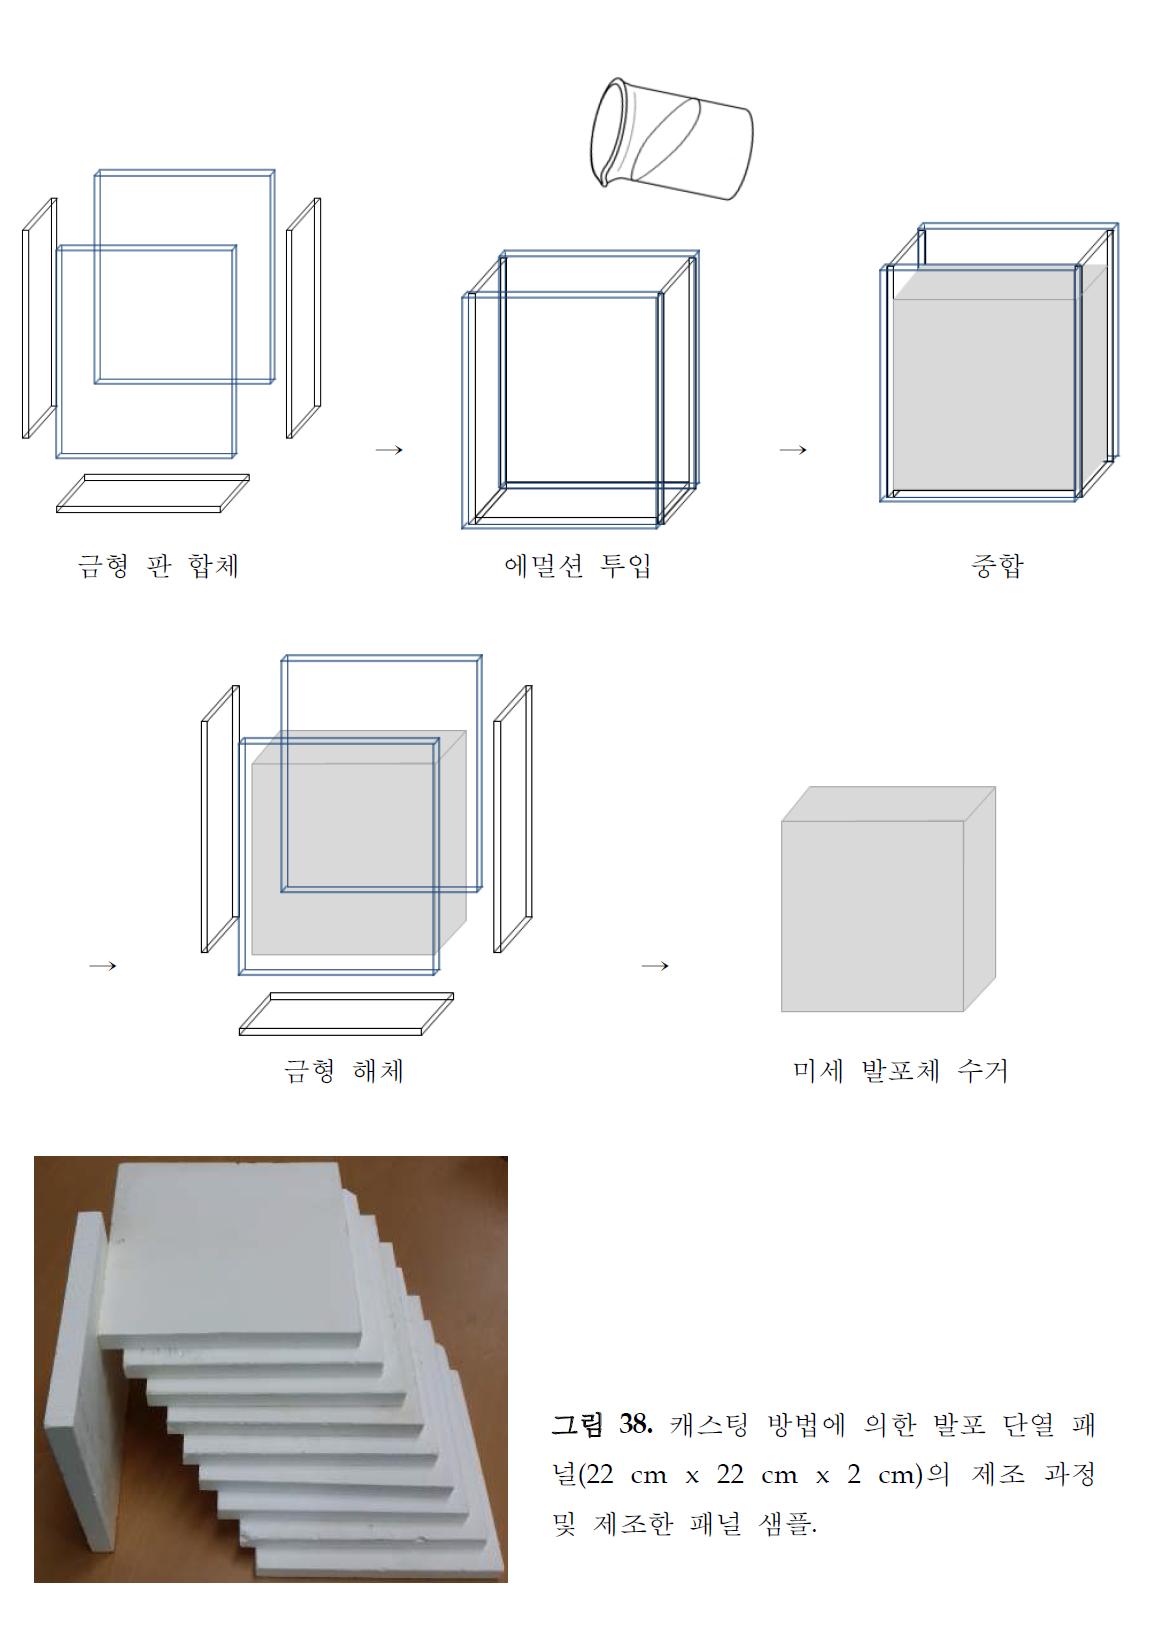 캐스팅 방법에 의한 발포 단열 패널(22 cm x 22 cm x 2 cm)의 제조 과정